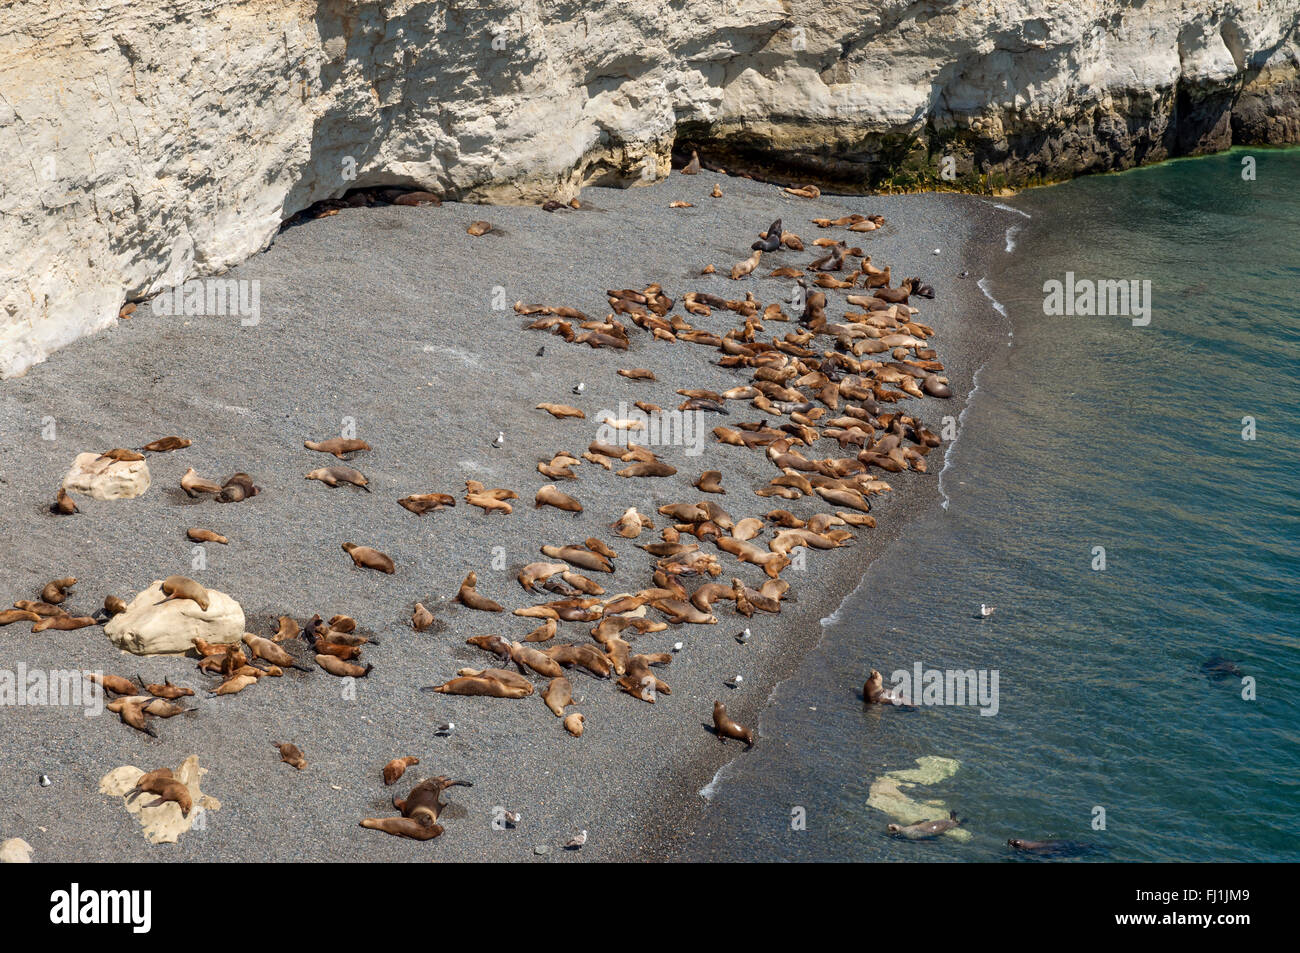 Une colonie de lions de mer sur une plage au sud de Puerto Madryn, Argentine. Banque D'Images